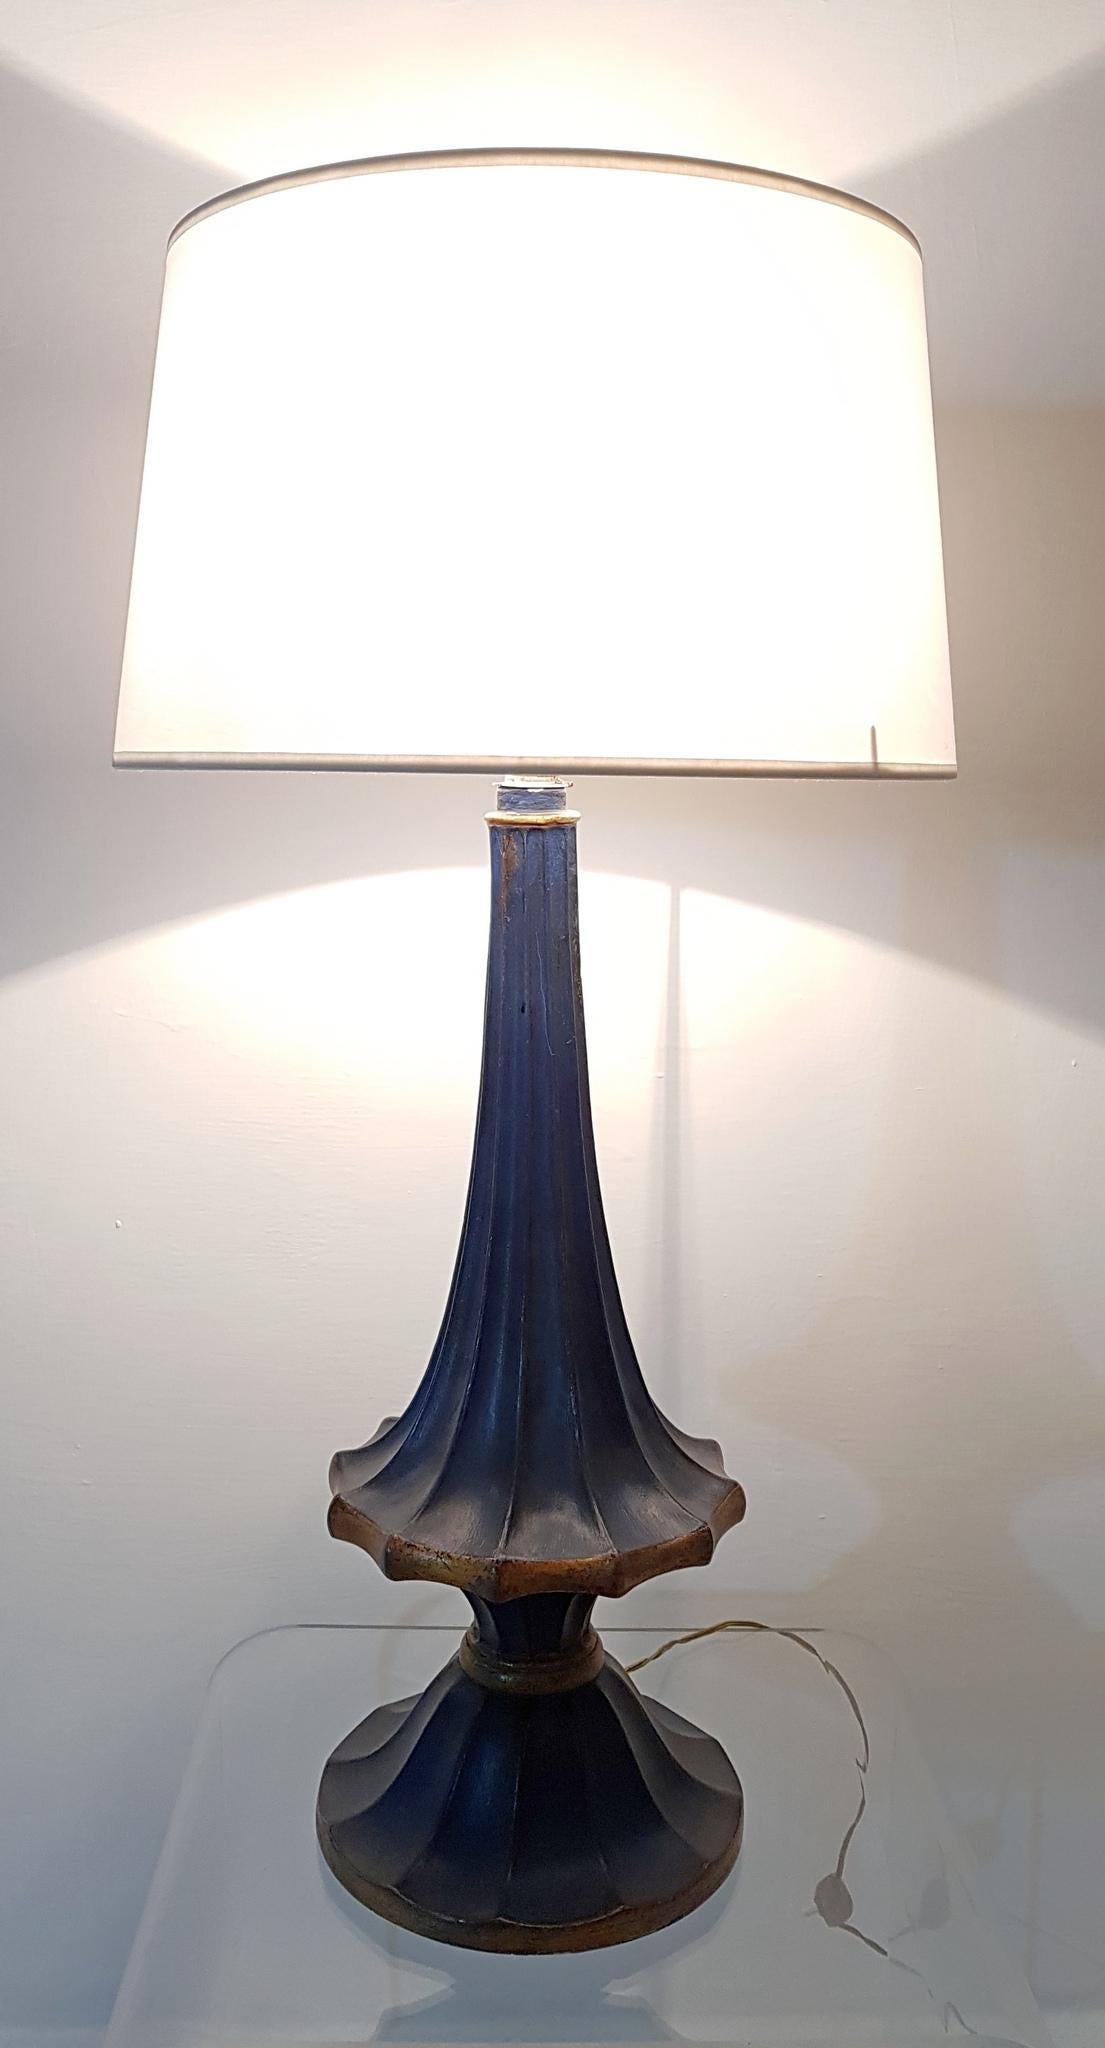 Außergewöhnliche Tischlampe aus Keramik in Kobaltblau und Gold mit weißem Lampenschirm aus Baumwolle. Darunter die Aufschrift 